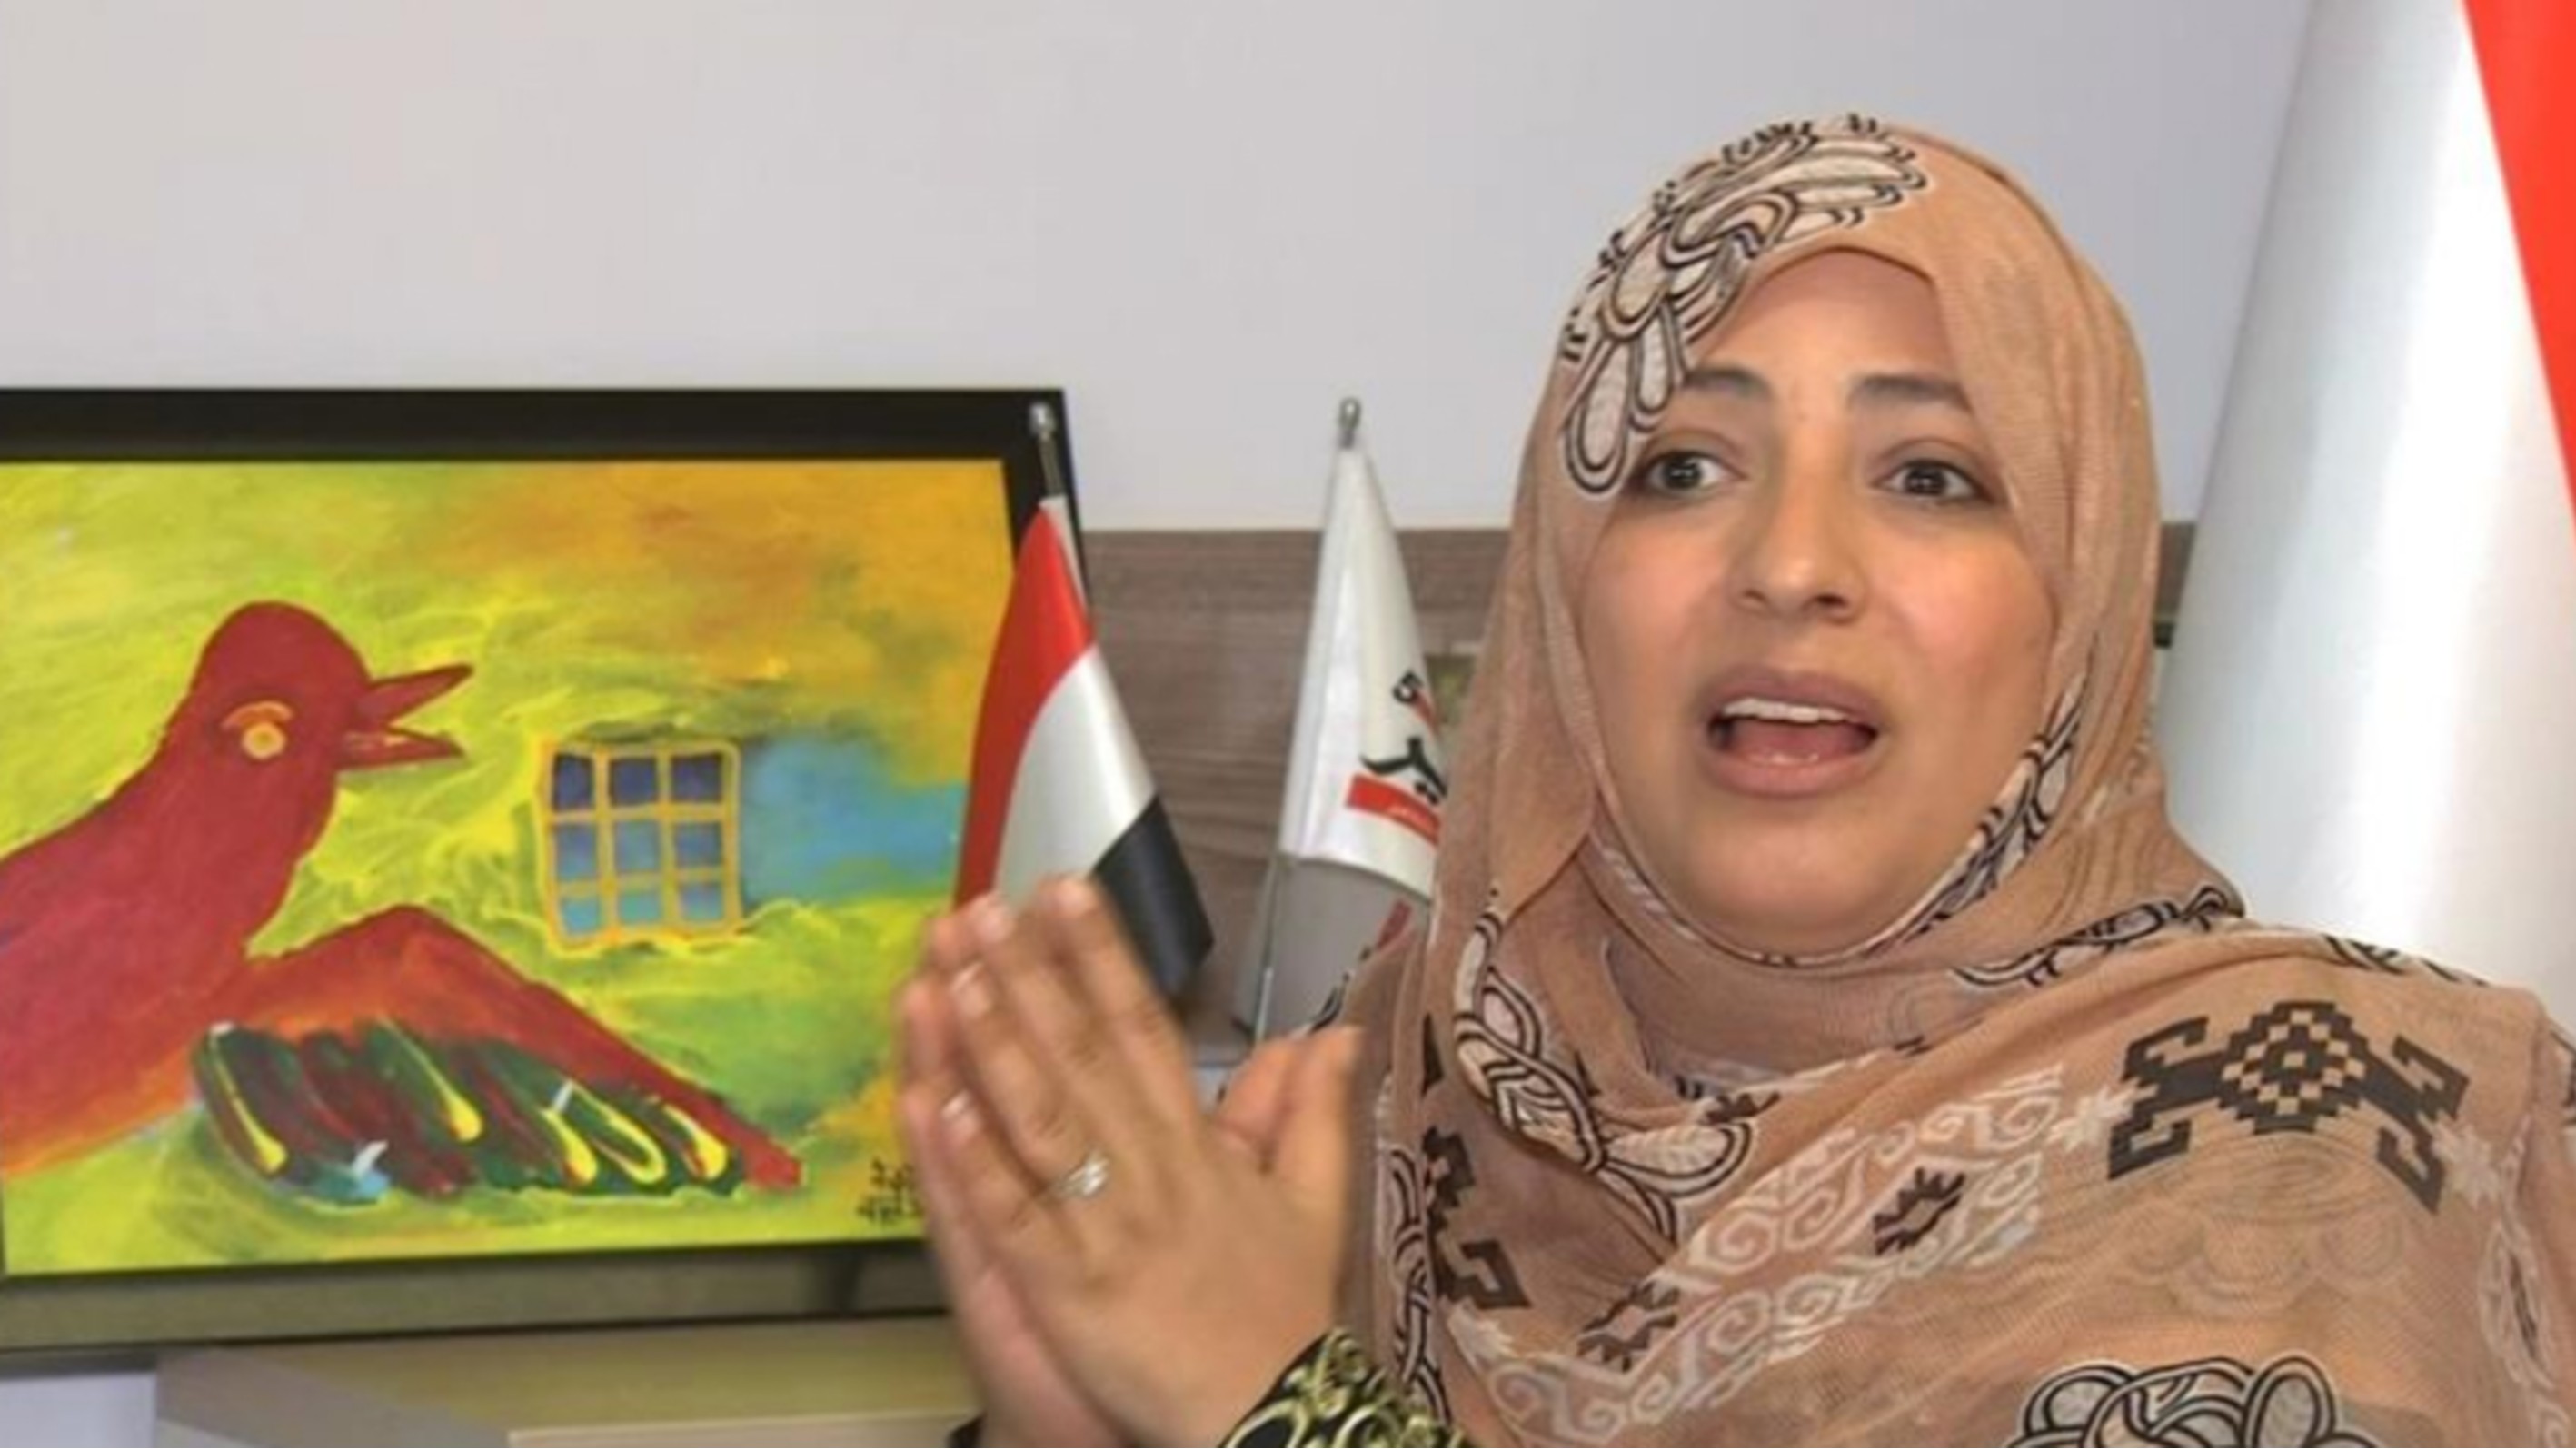 حوار الناشطة الحائزة على جائزة نوبل للسلام توكل كرمان مع موقع عربي21